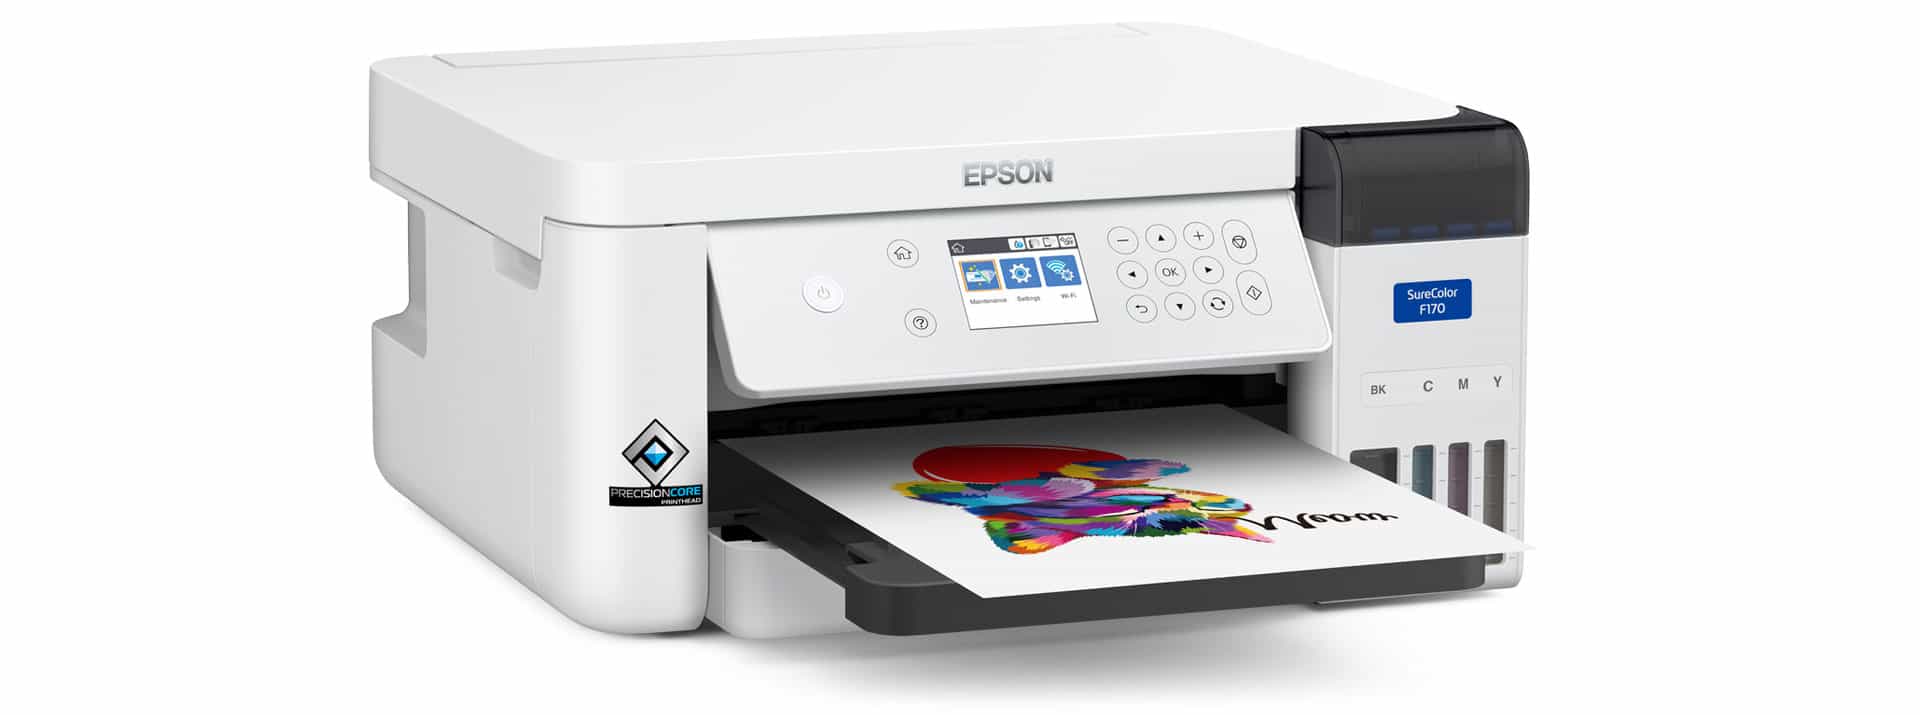 impresora-de-sublimaci-n-epson-surecolor-f170-ideas-de-negocios